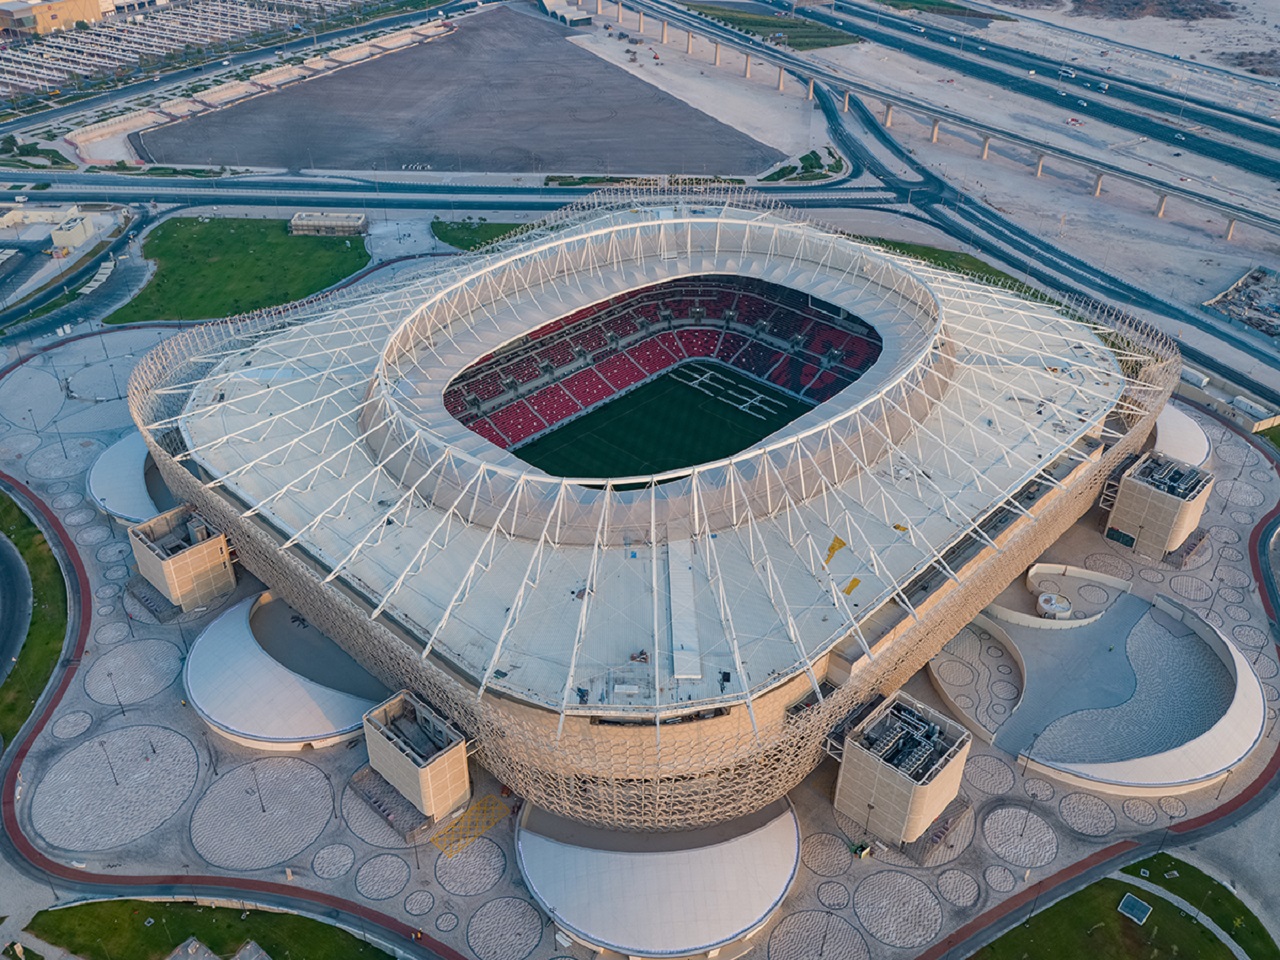 Chiêm ngưỡng 8 sân vận động tuyệt đẹp phục vụ World Cup 2022 ở Qatar - 7